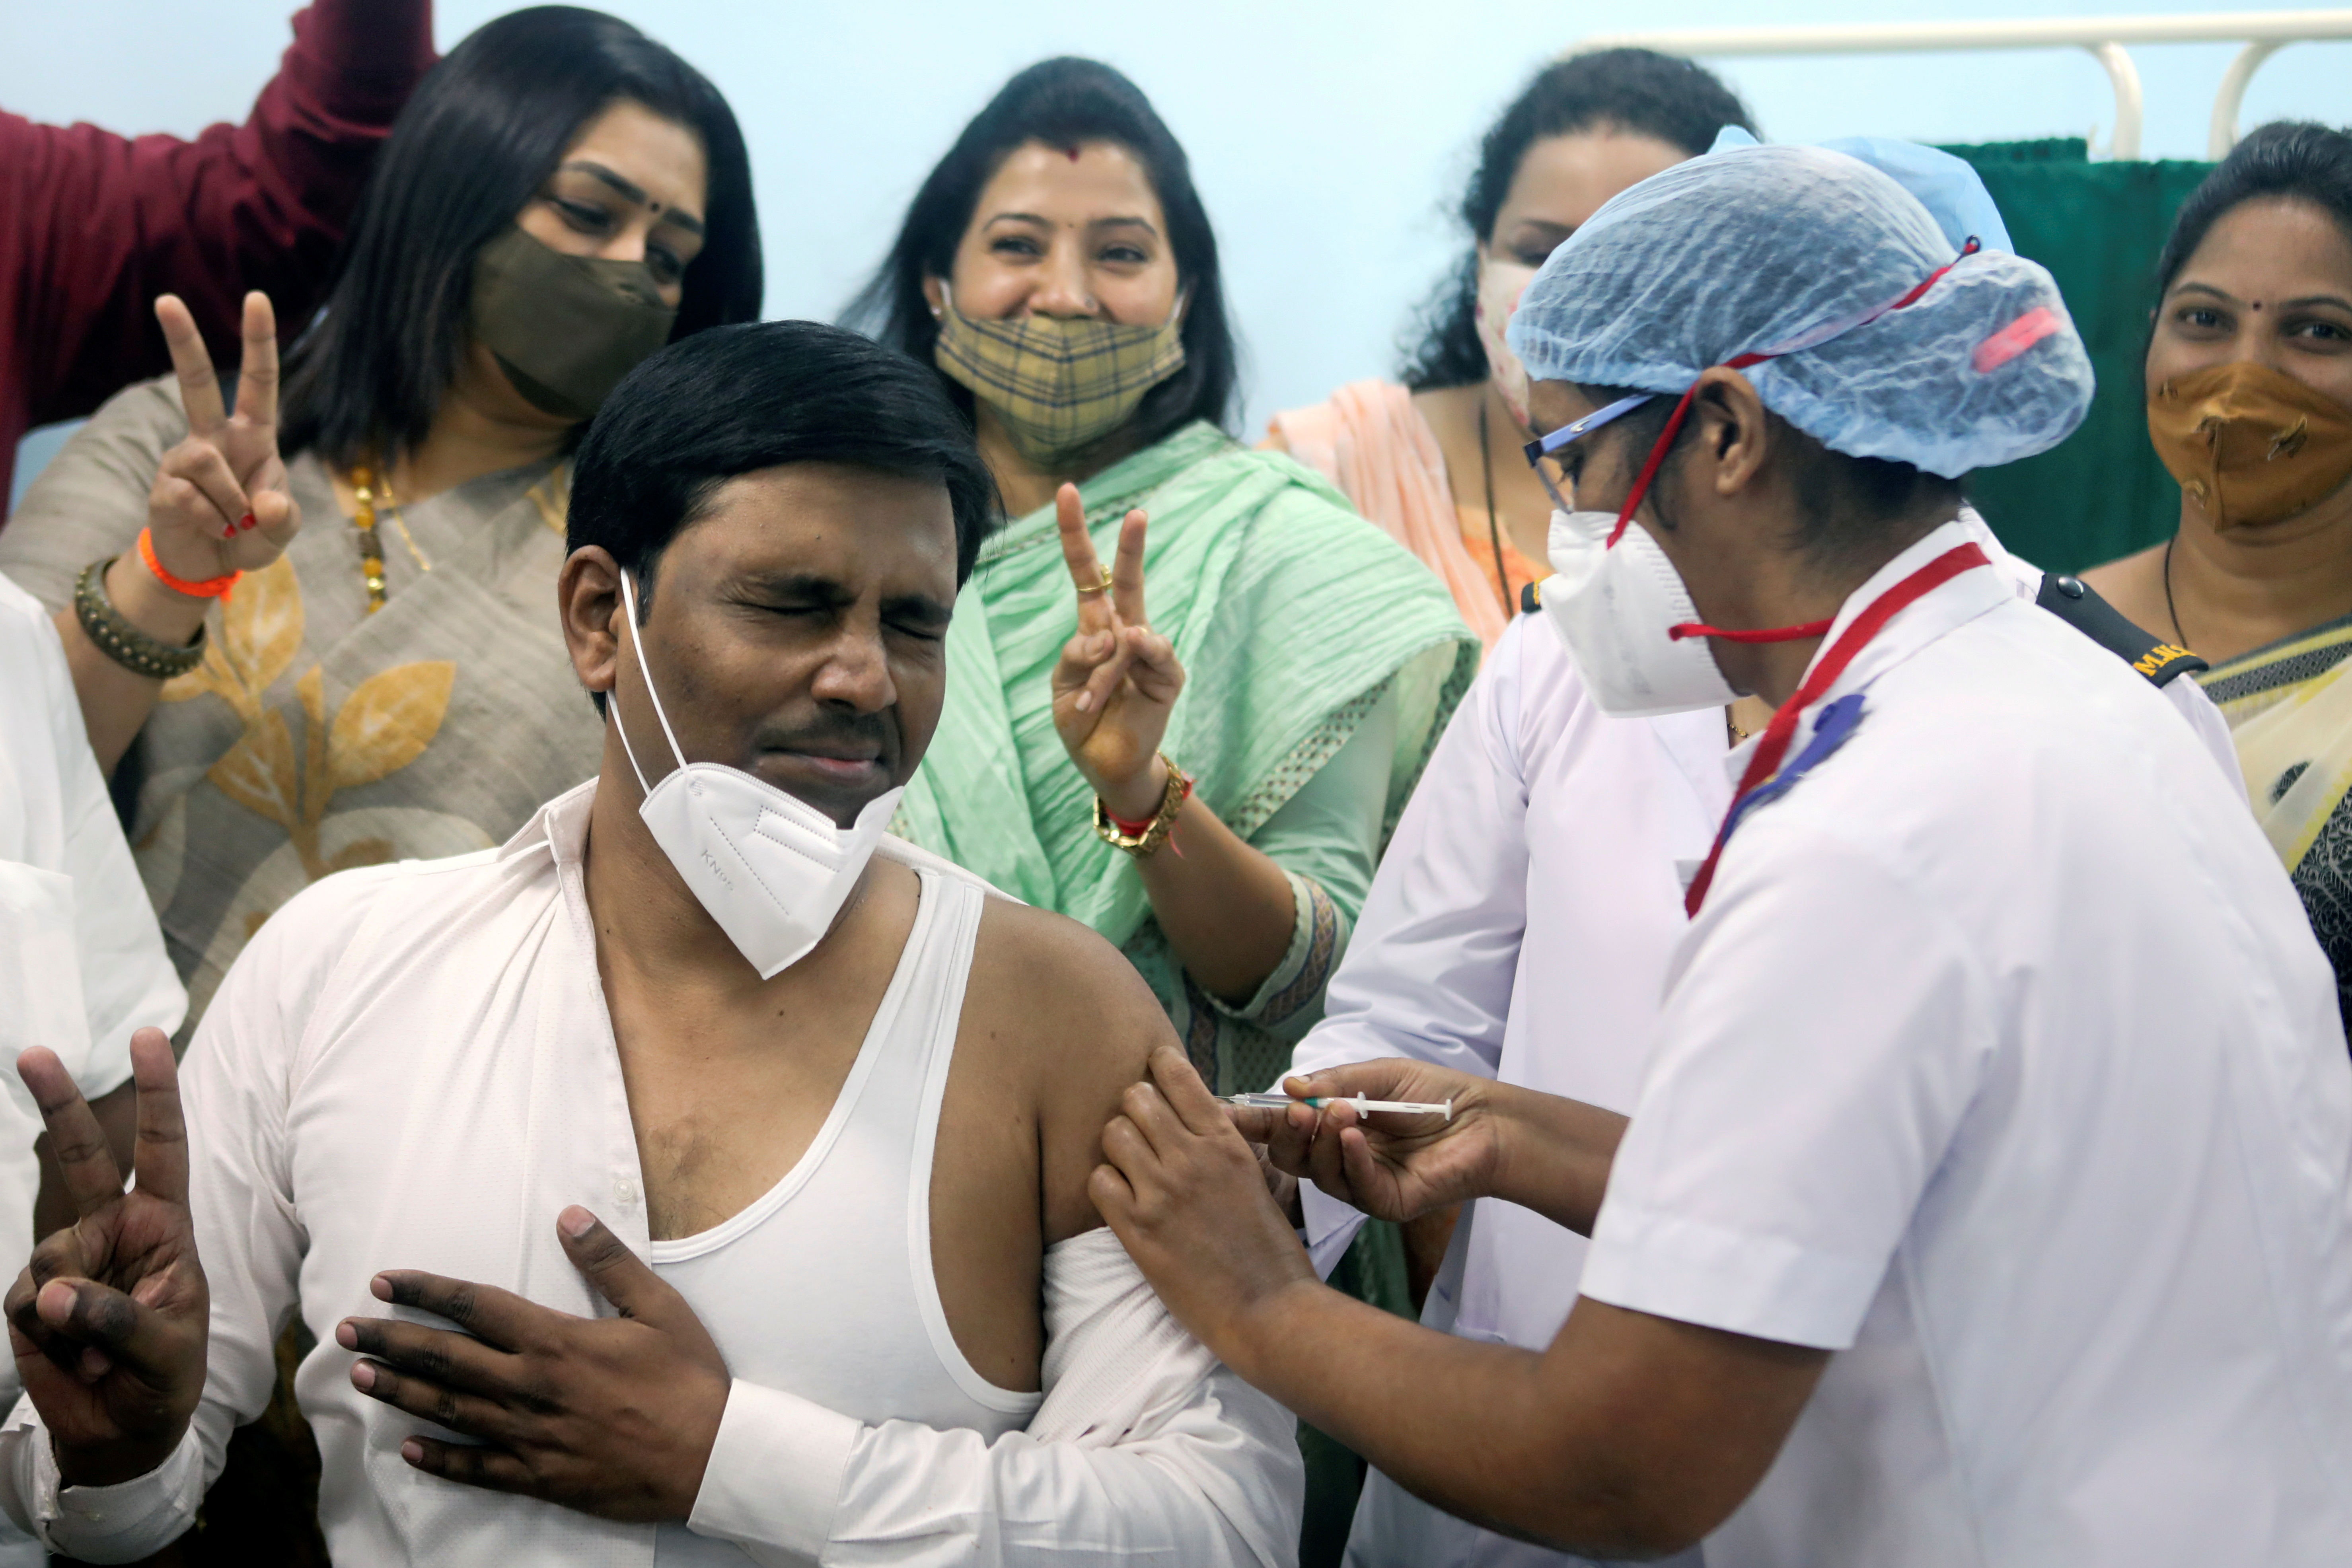 Un trabajador sanitario recibe una vacuna COVISHIELD de AstraZeneca, durante la campaña de vacunación en un centro médico de Mumbai, India, el 16 de enero de 2021 (REUTERS/Francis Mascarenhas/File Photo)